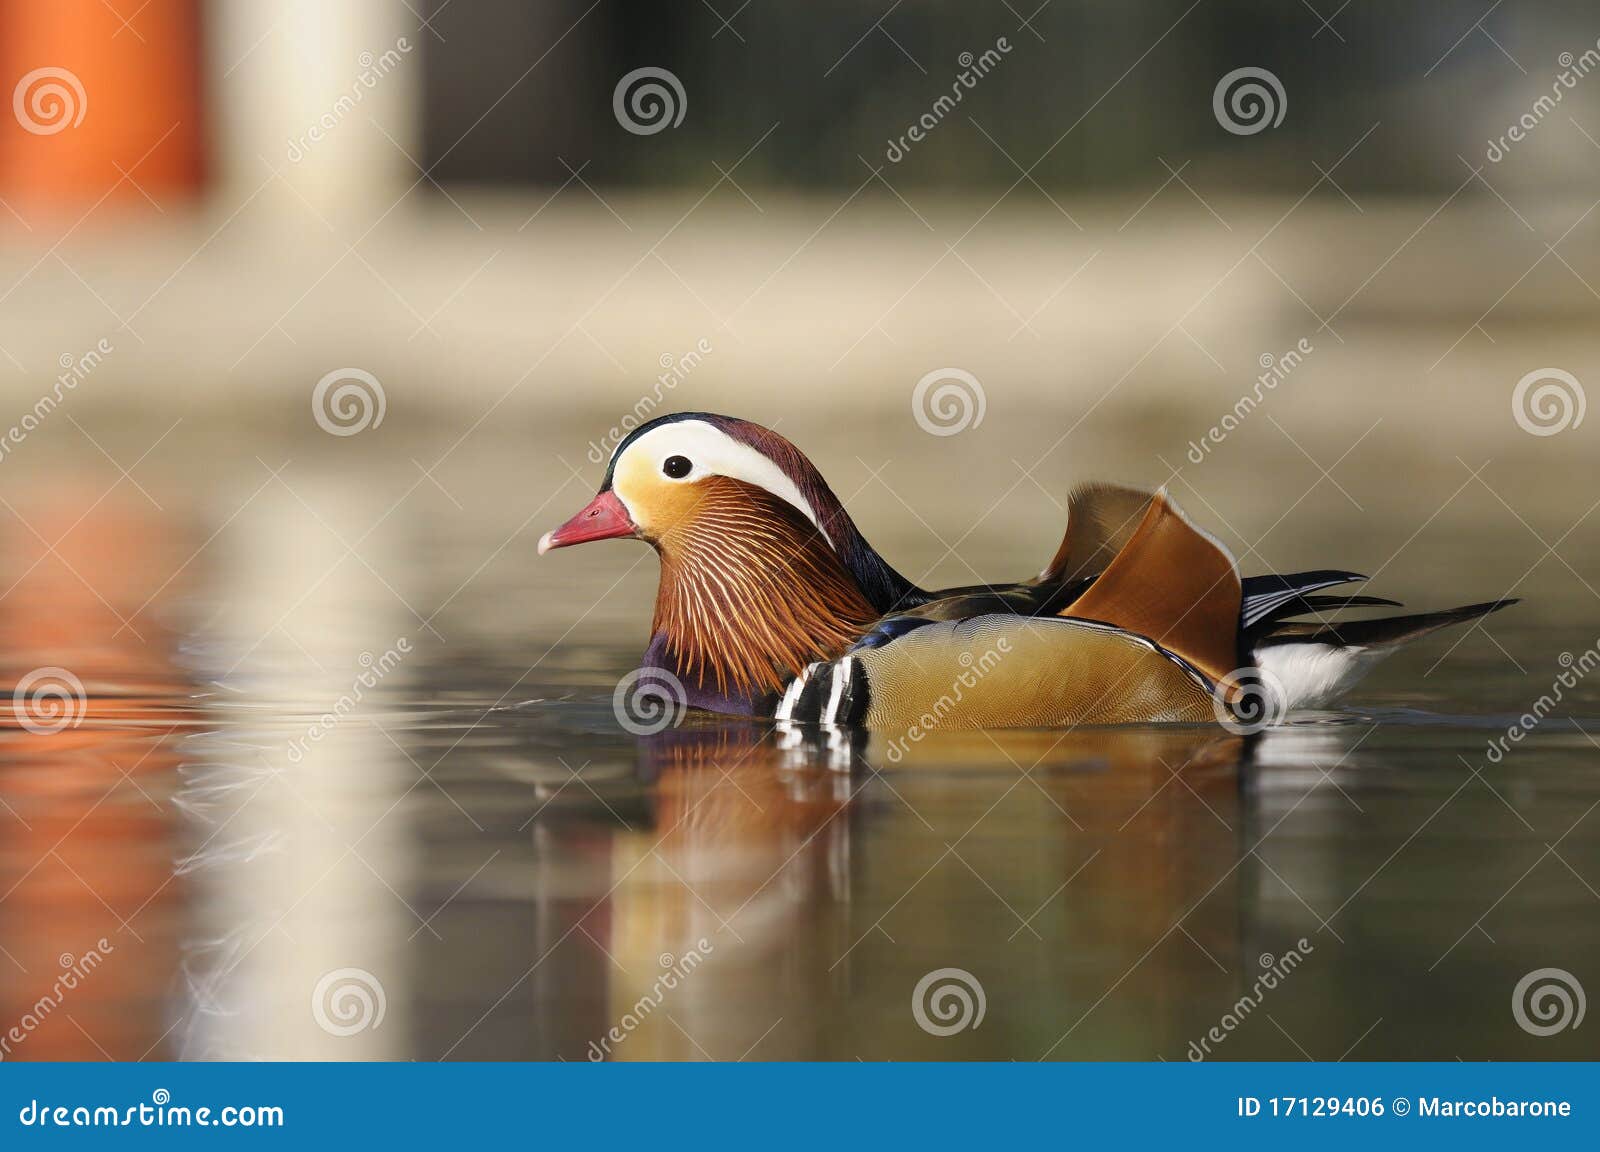 mandarina duck